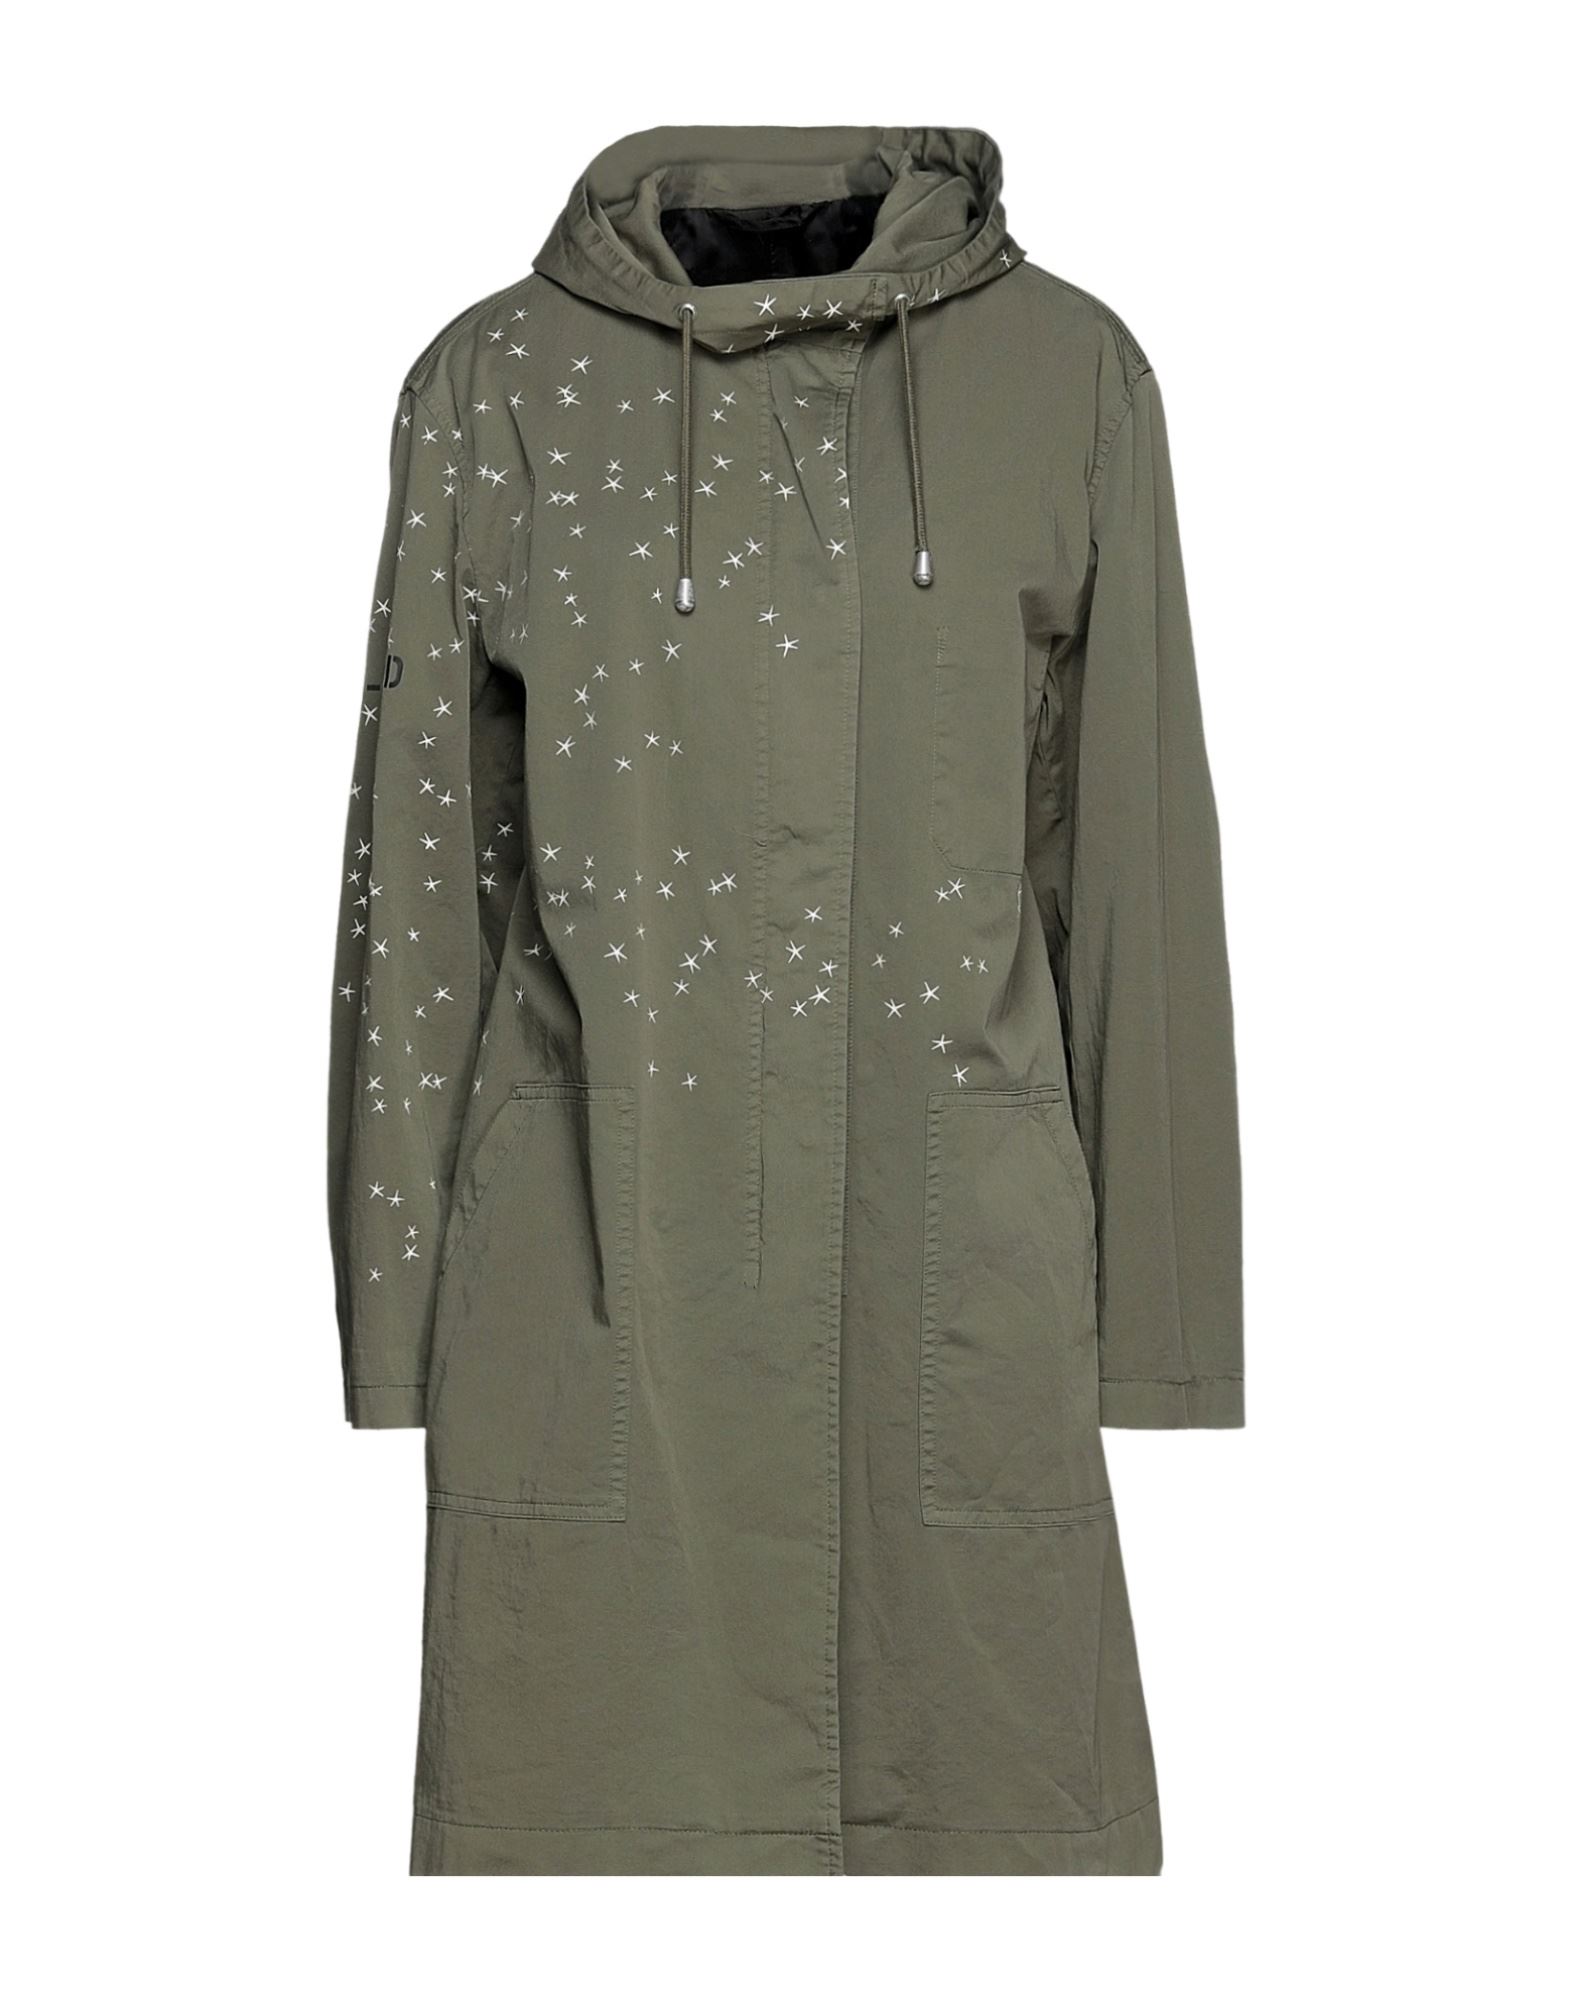 CLOSED Jacke, Mantel & Trenchcoat Damen Militärgrün von CLOSED